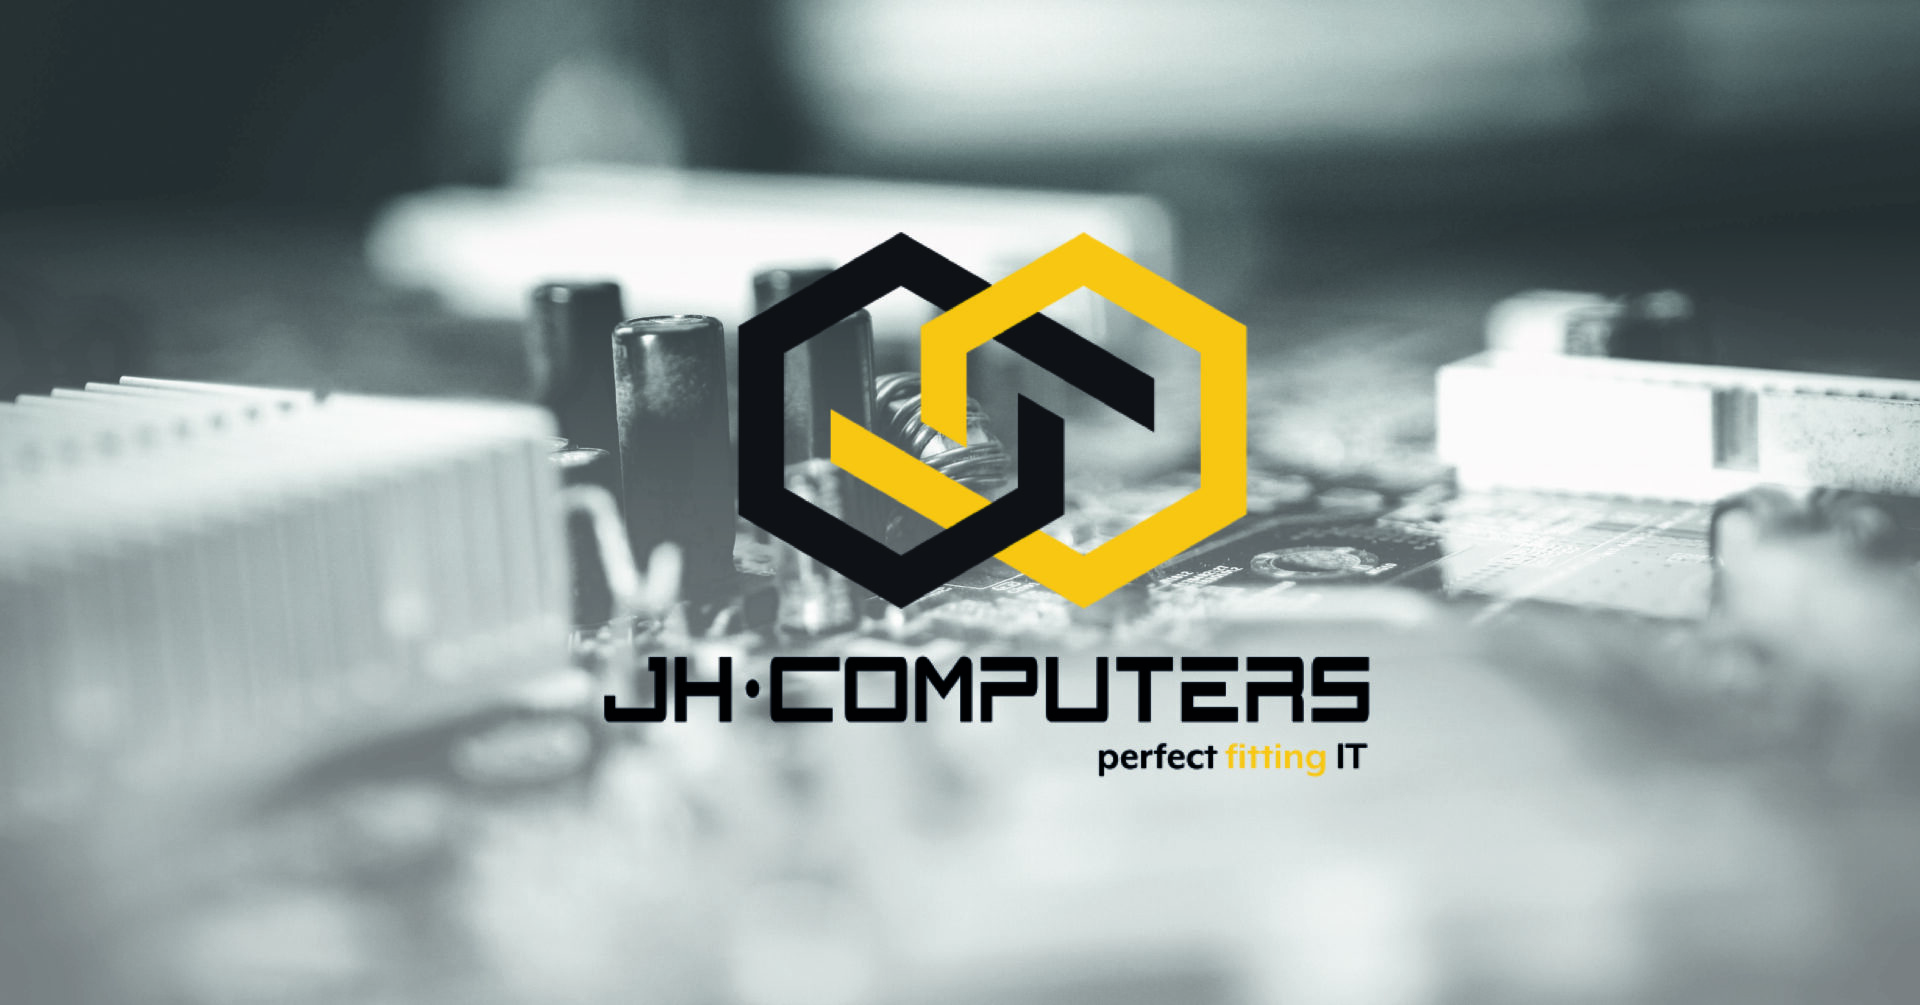 (c) Jh-computers.de